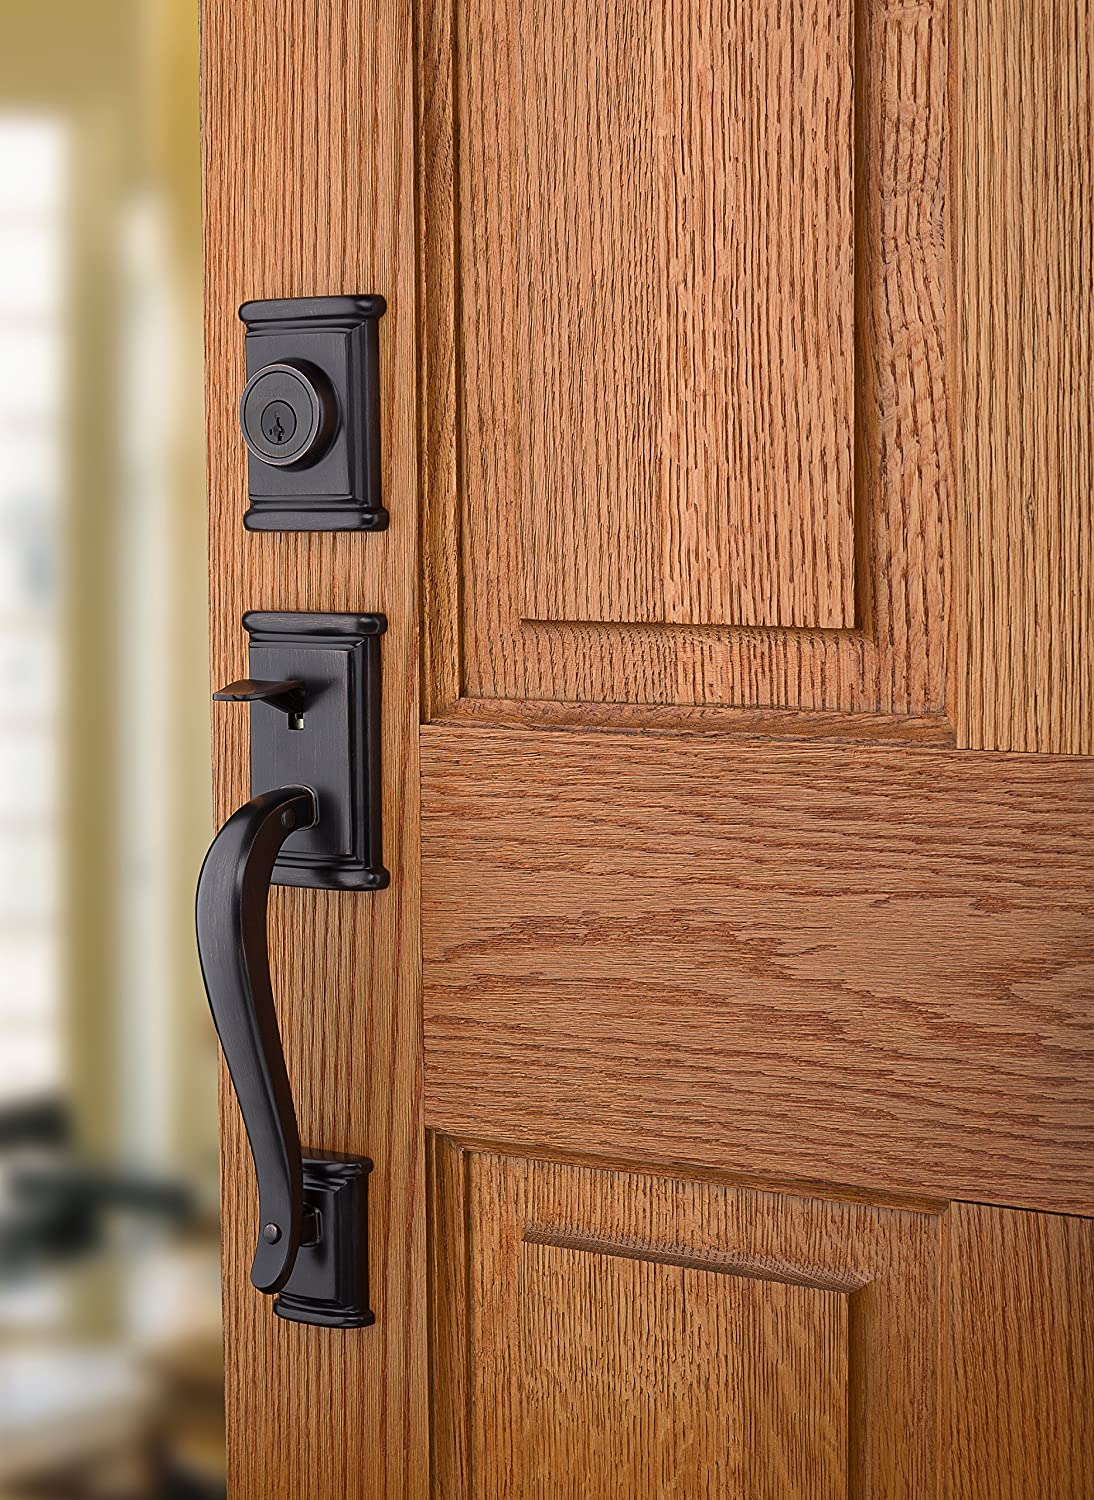 exterior door knob and deadbolt